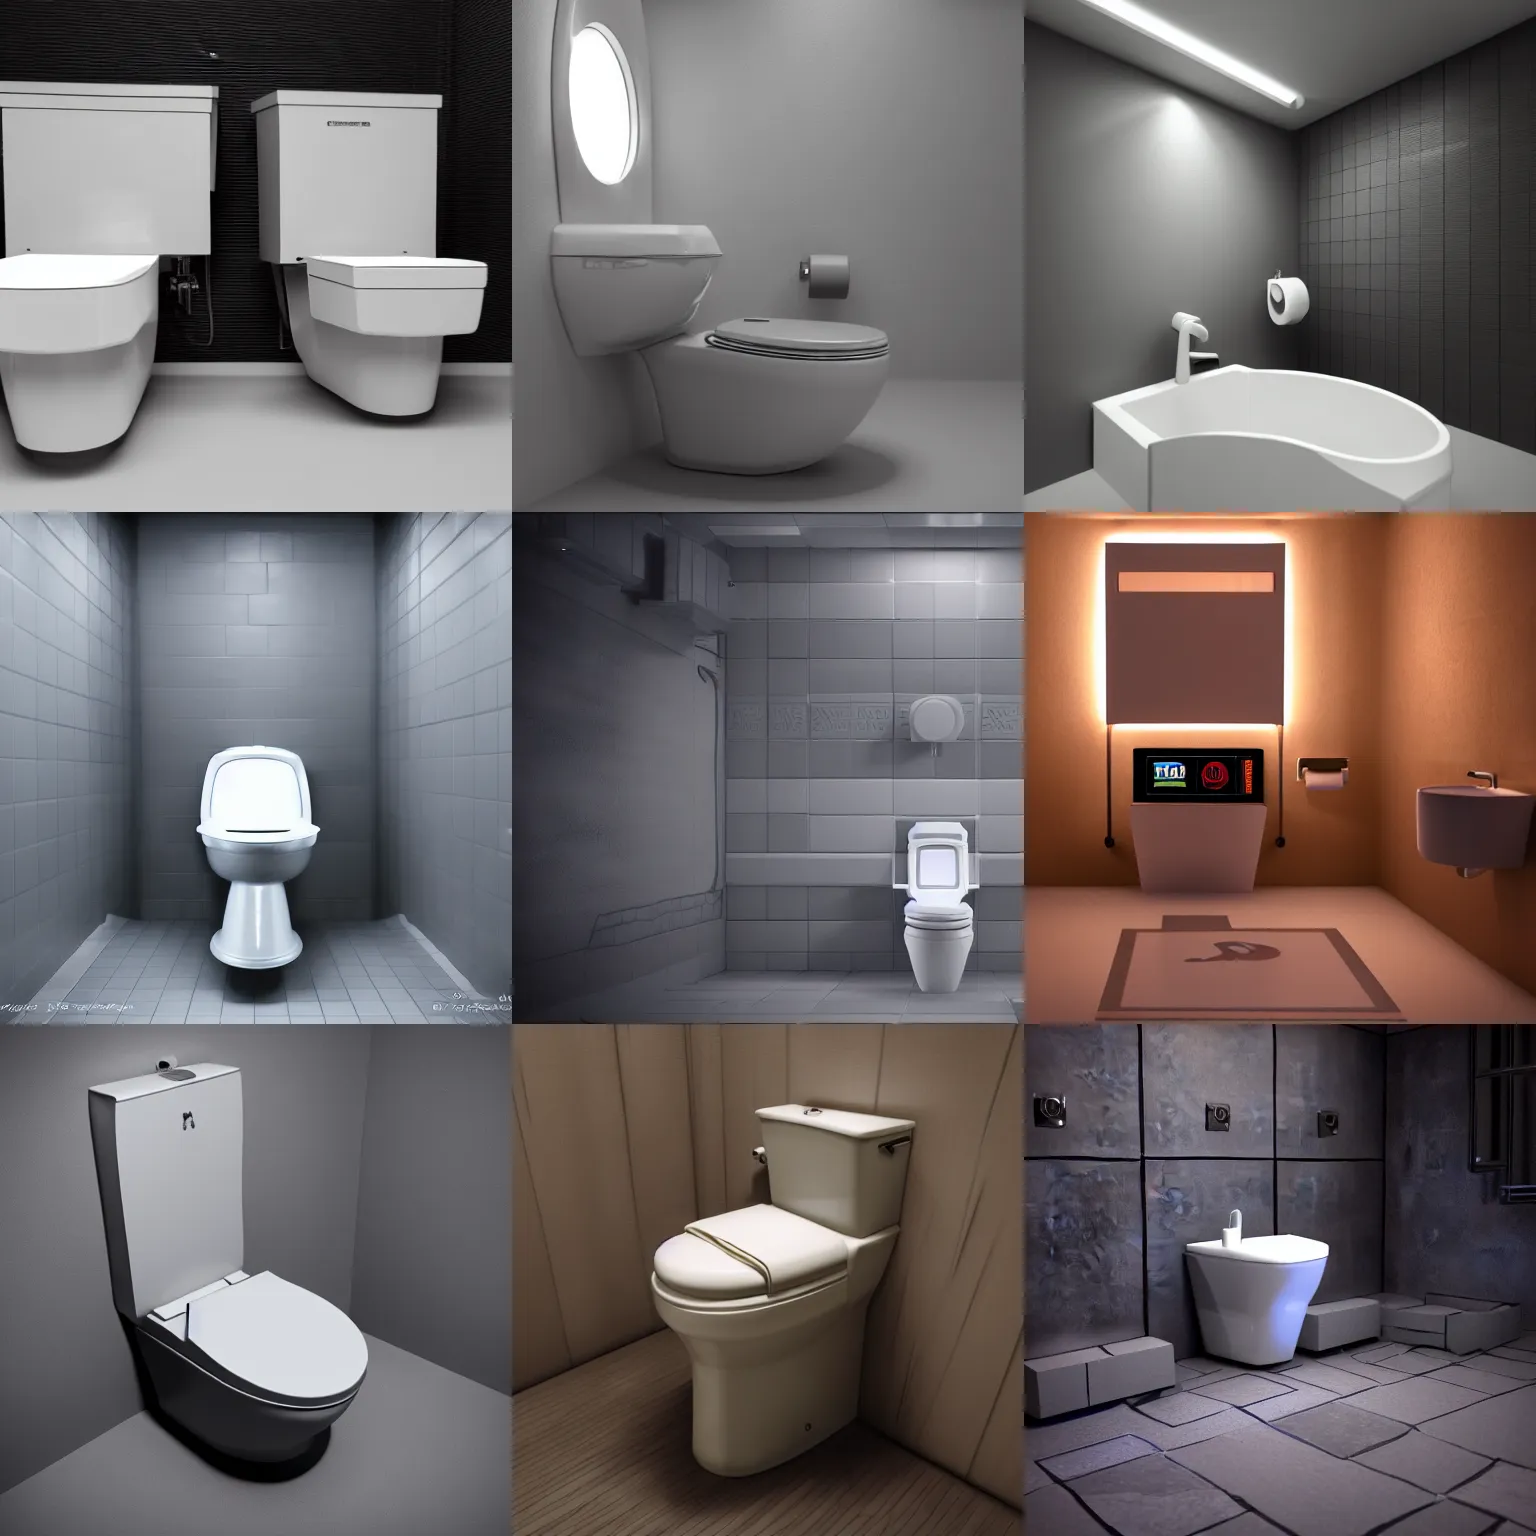 Prompt: 3d render of a gaming toilet, octane, dark studio lighting